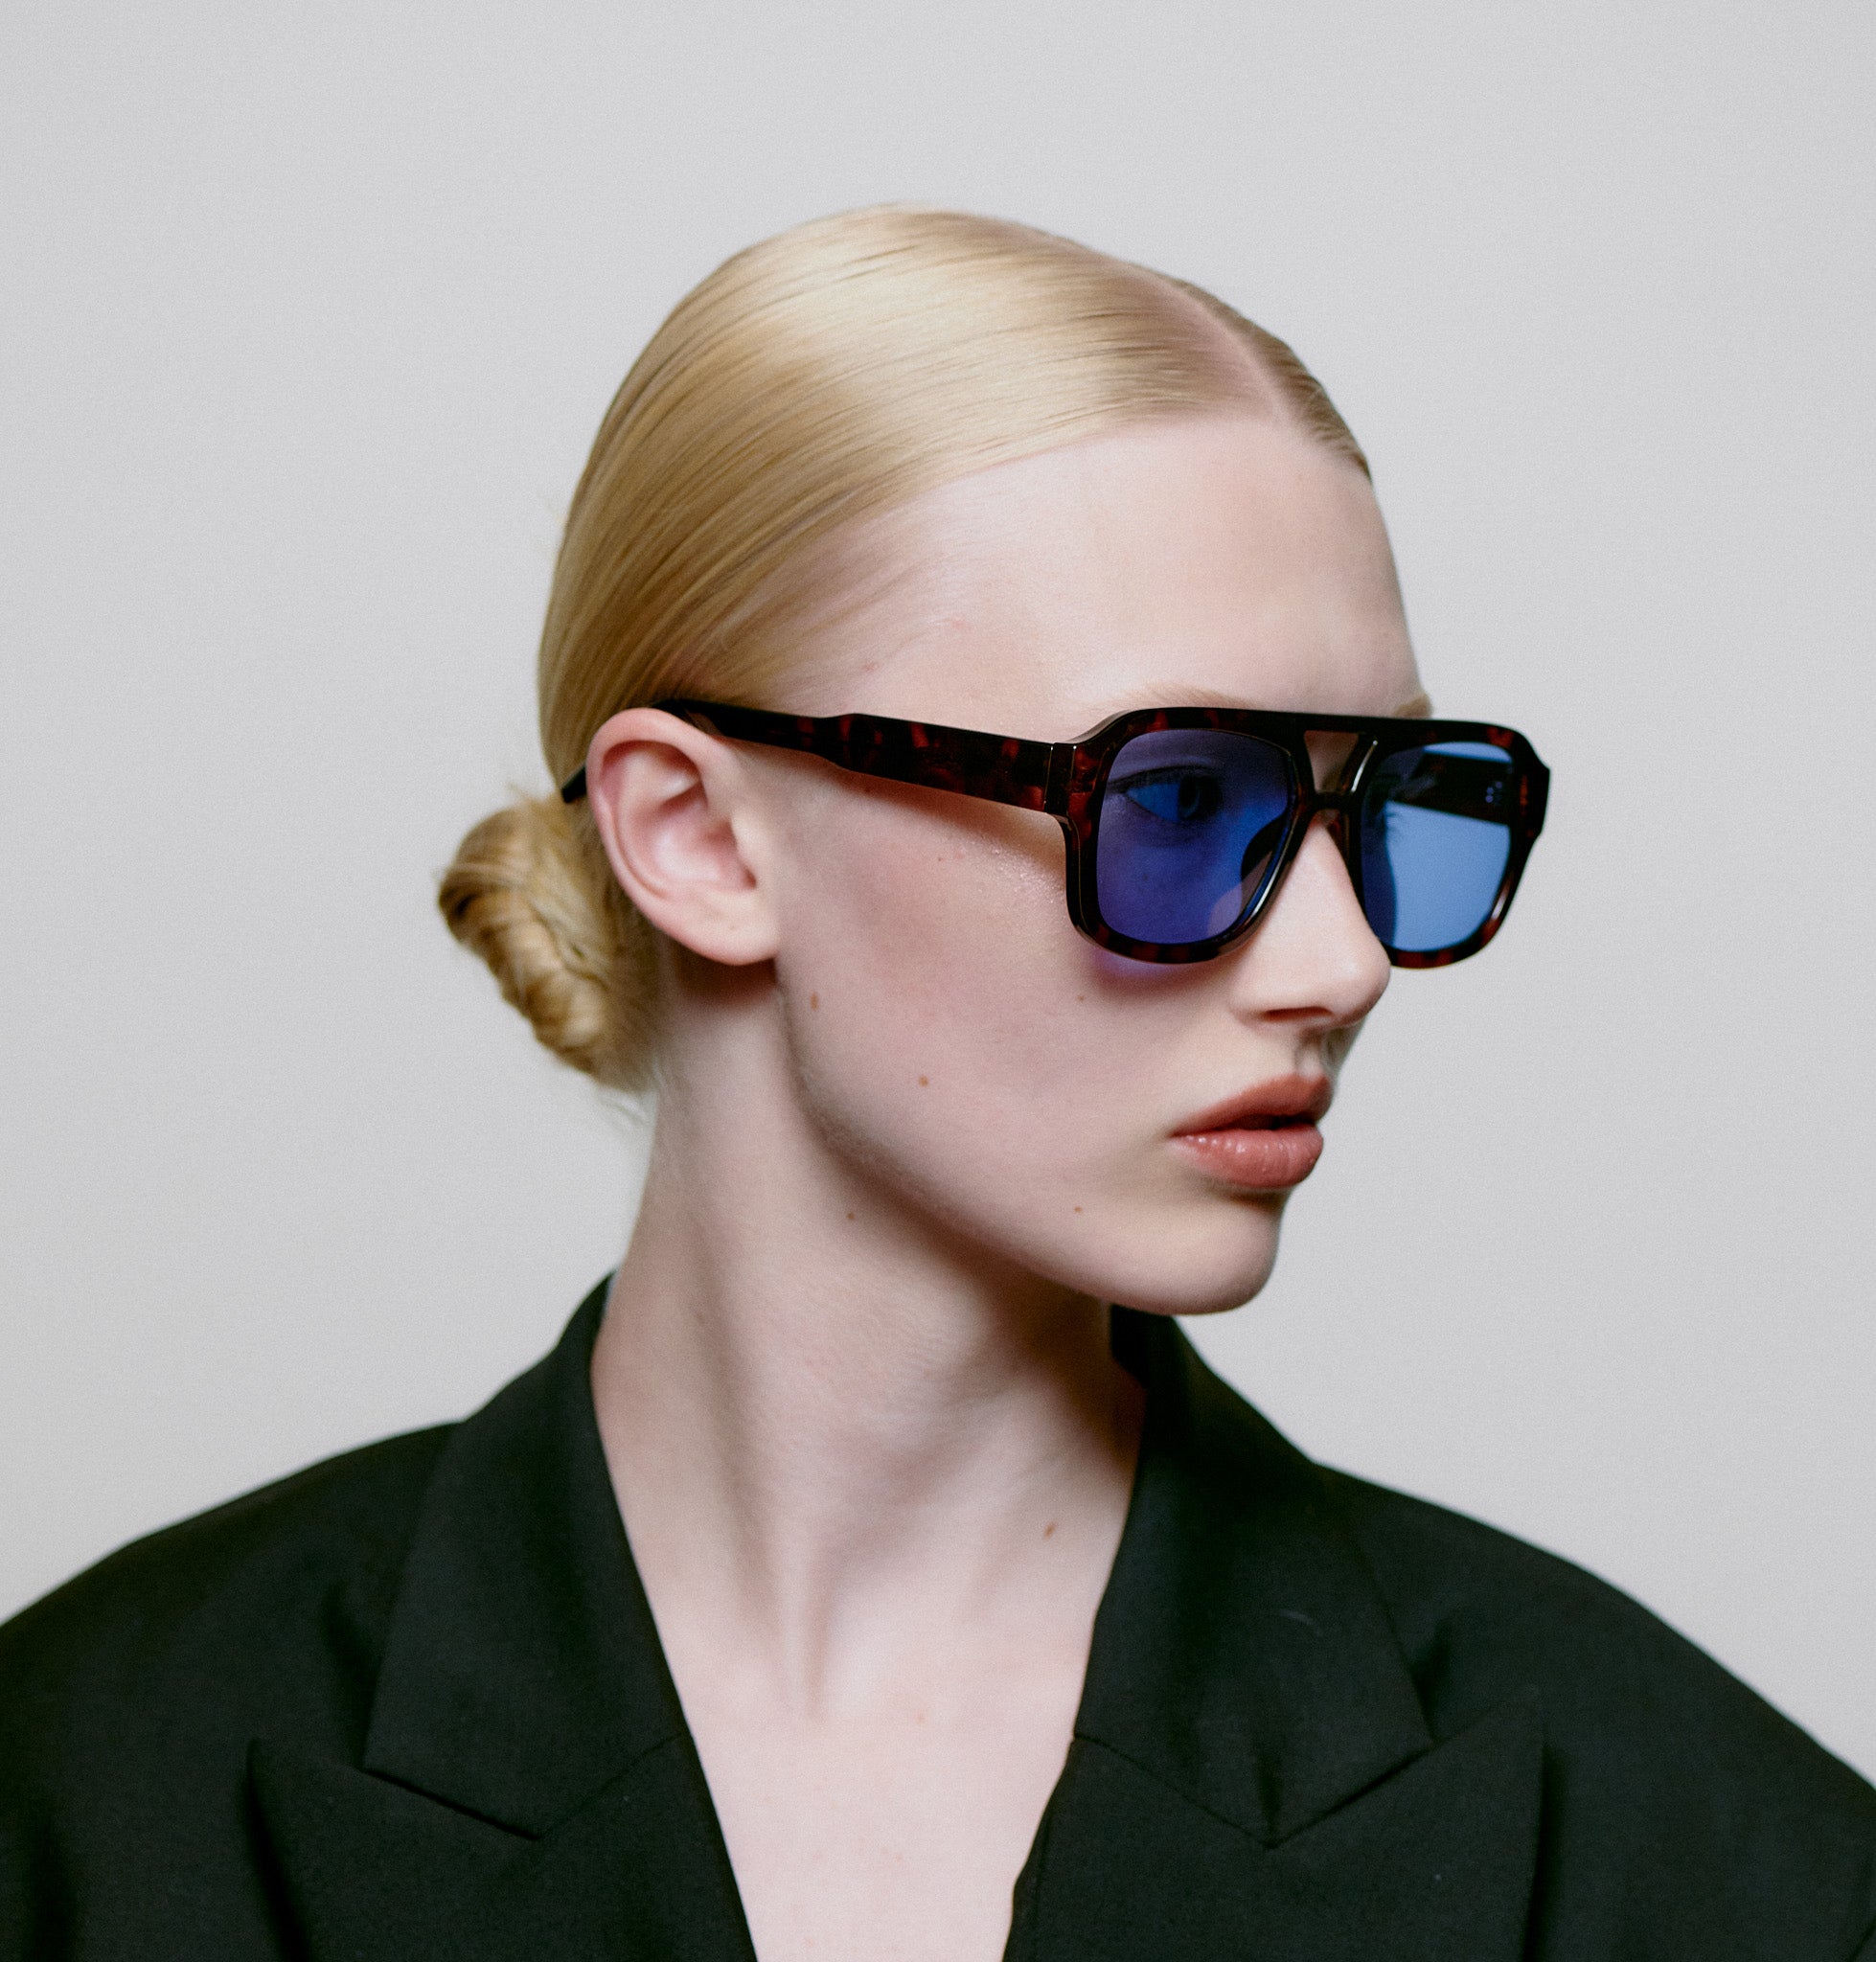 Kaya sunglasses in demi tortoise blue lens